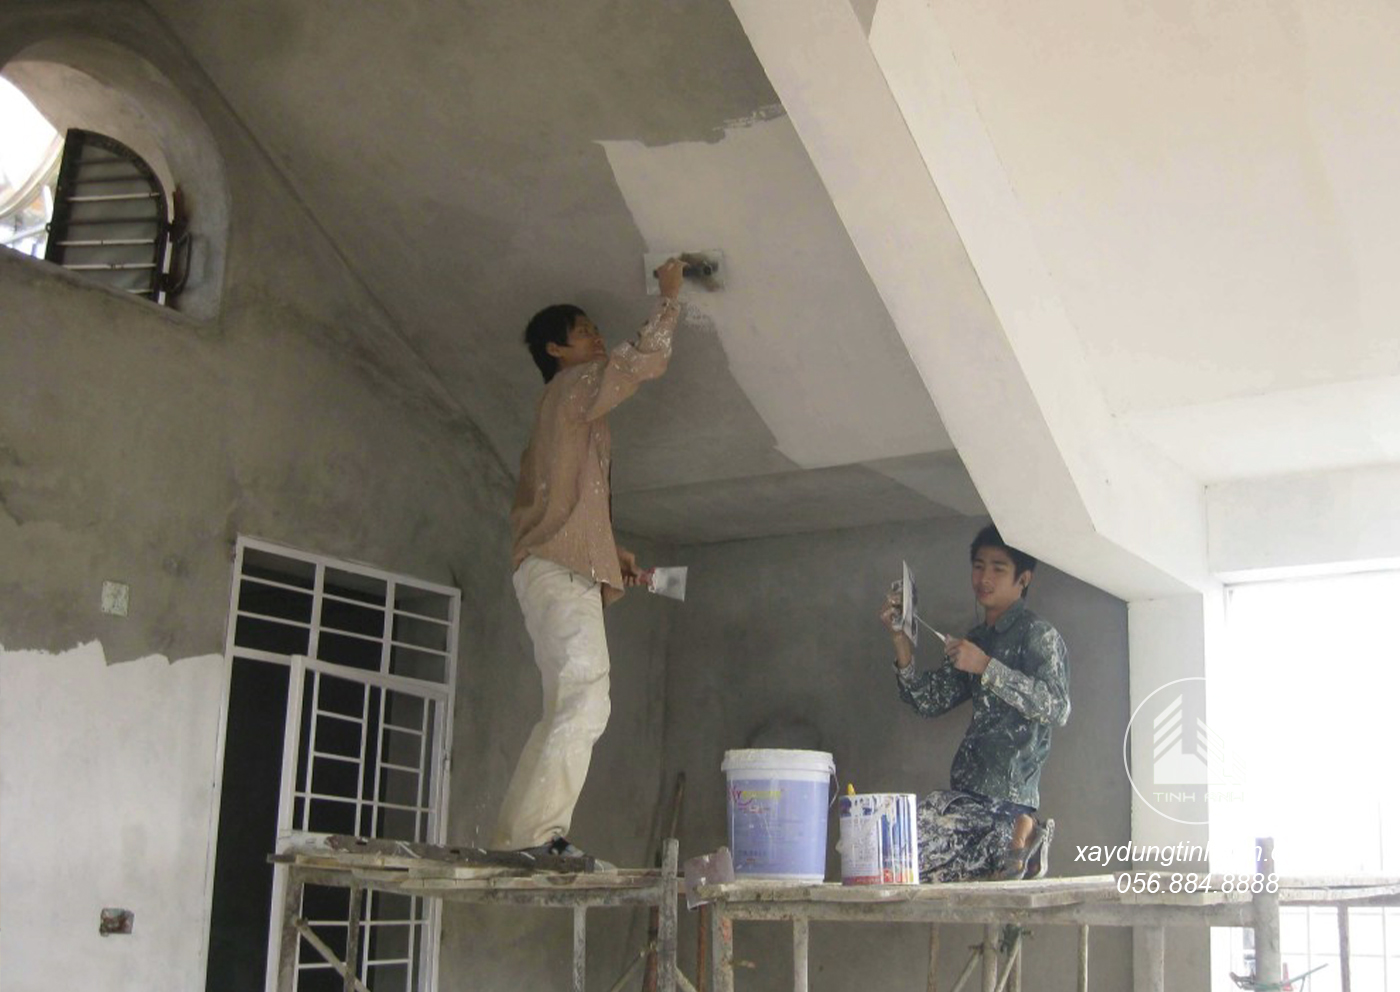 Sửa nhà trọn gói phần sơn bả - xaydungtinhanh.com- 4